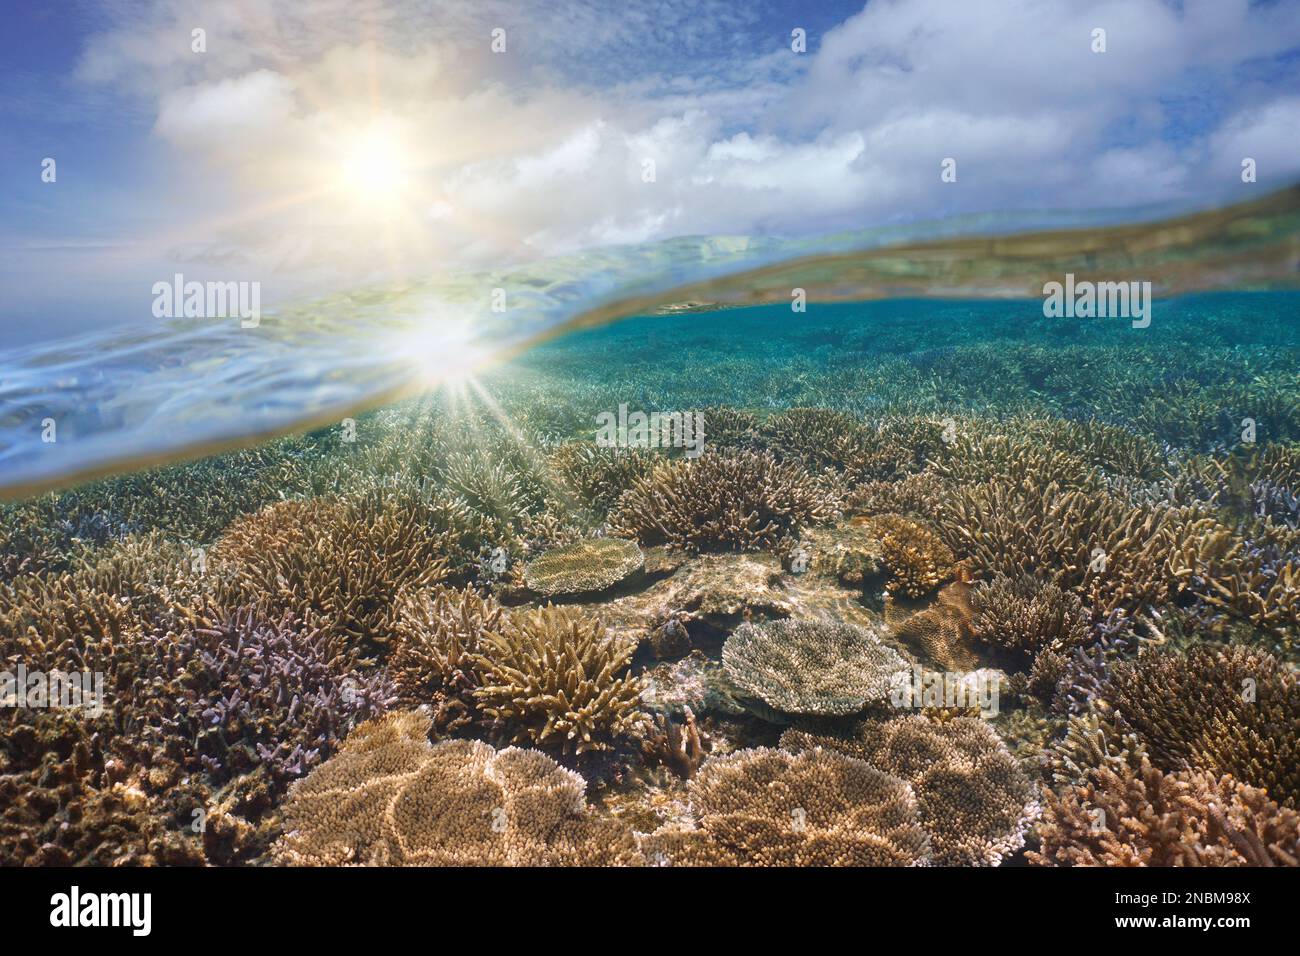 Luz del sol en el cielo y arrecife de coral bajo el agua, vista dividida sobre y debajo de la superficie del agua, paisaje marino del océano Pacífico sur, Oceanía Foto de stock